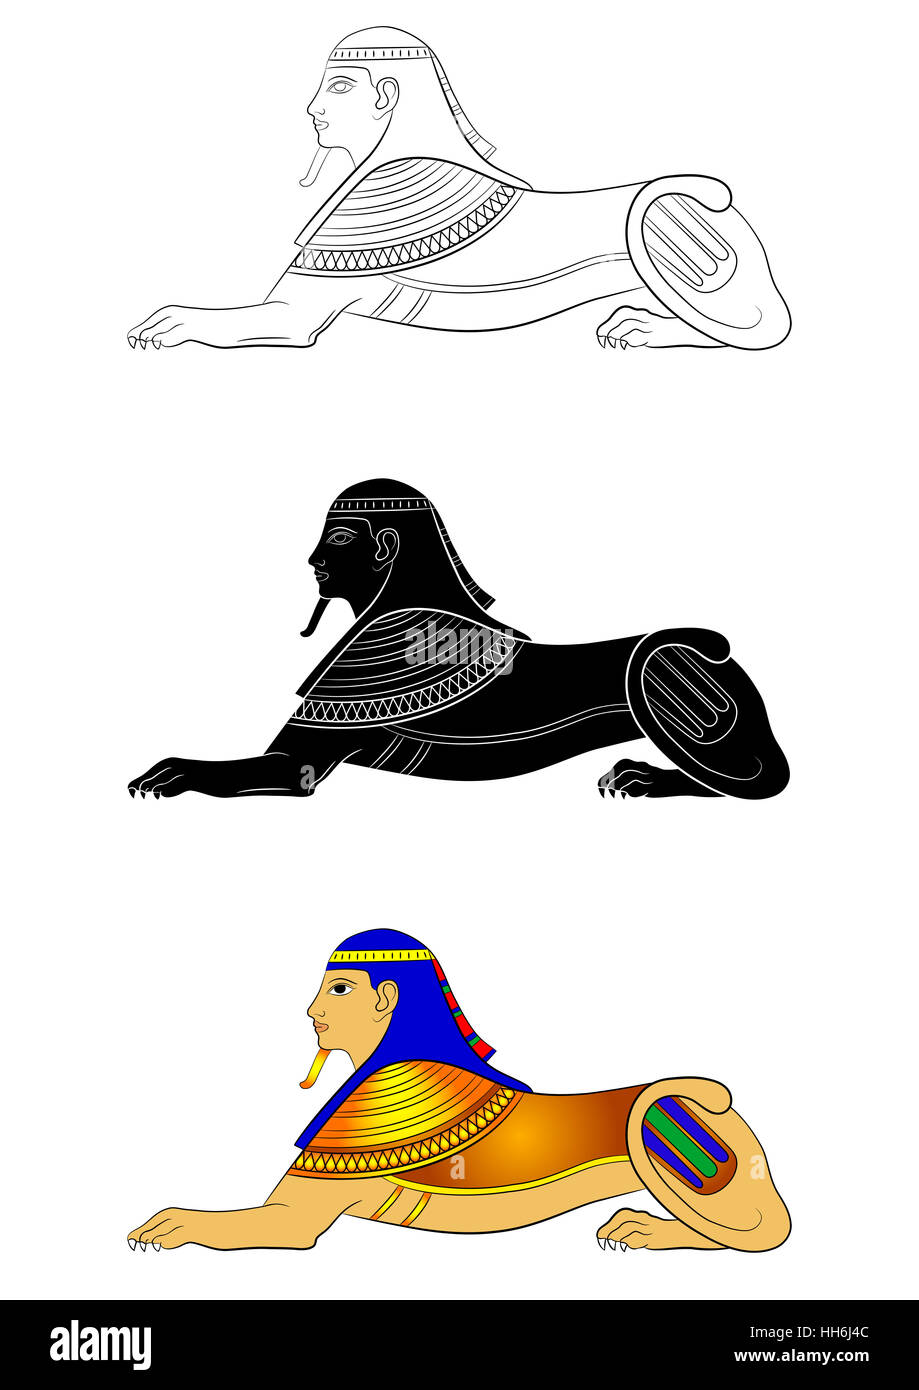 Sphinx - mitica creatura di antico Egitto Foto Stock